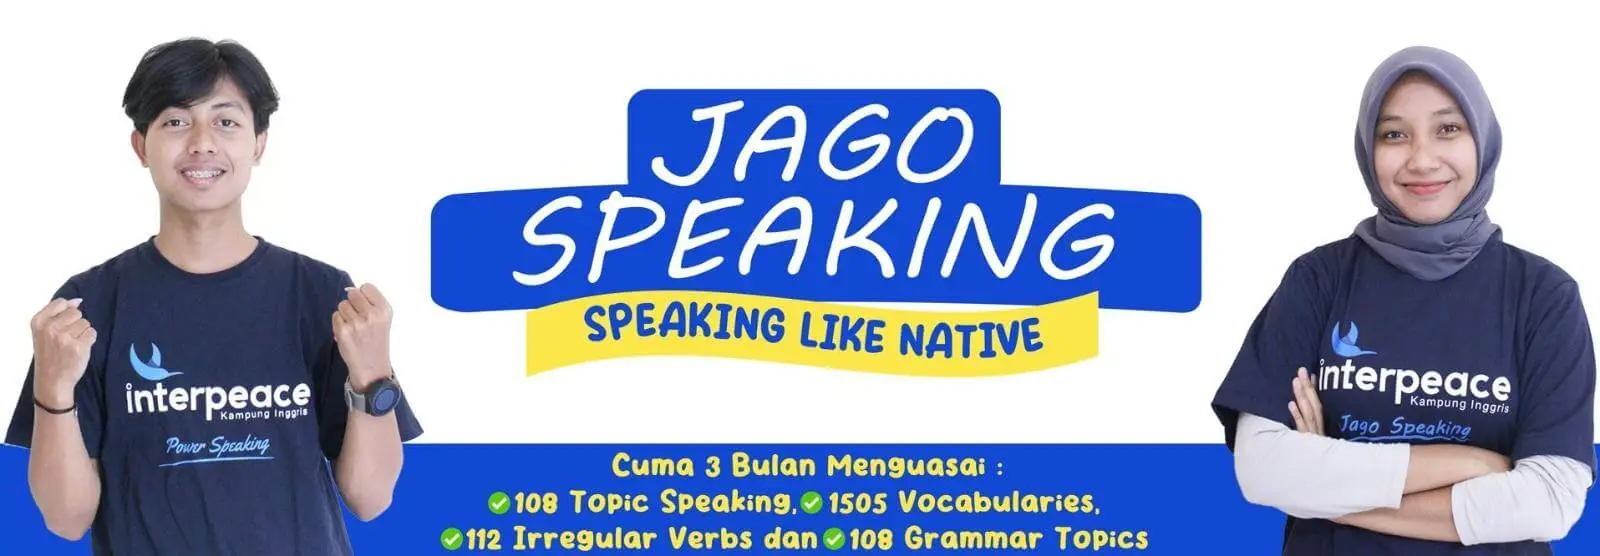 banner jago speaking kampung inggris interpeace pare